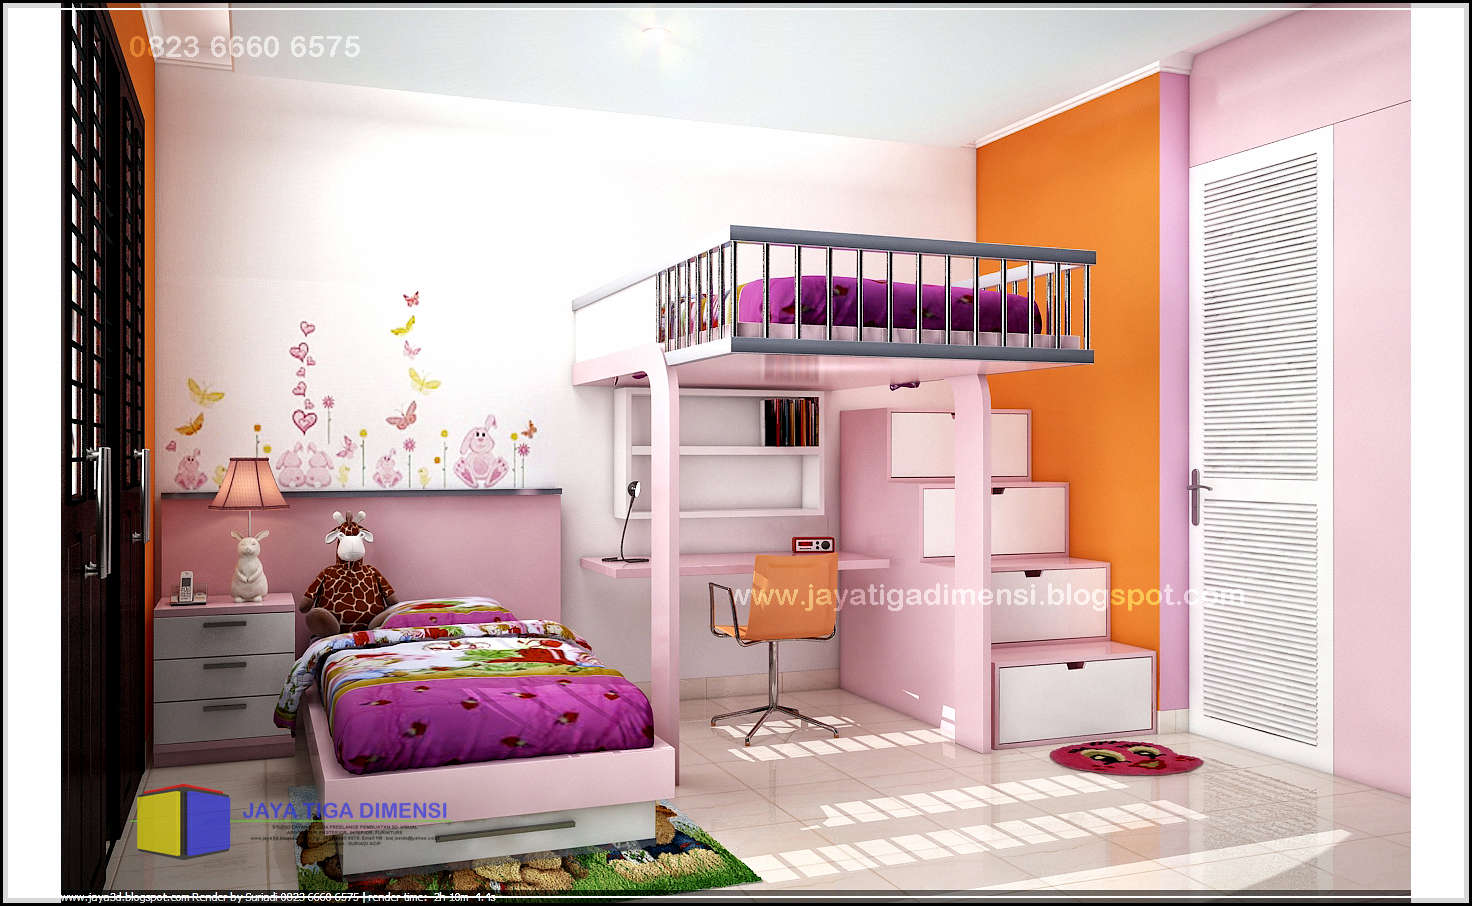 Dekorasi Kamar Tidur Minimalis Anak Perempuan - Kamar Tidur Minimalis Anak - HD Wallpaper 